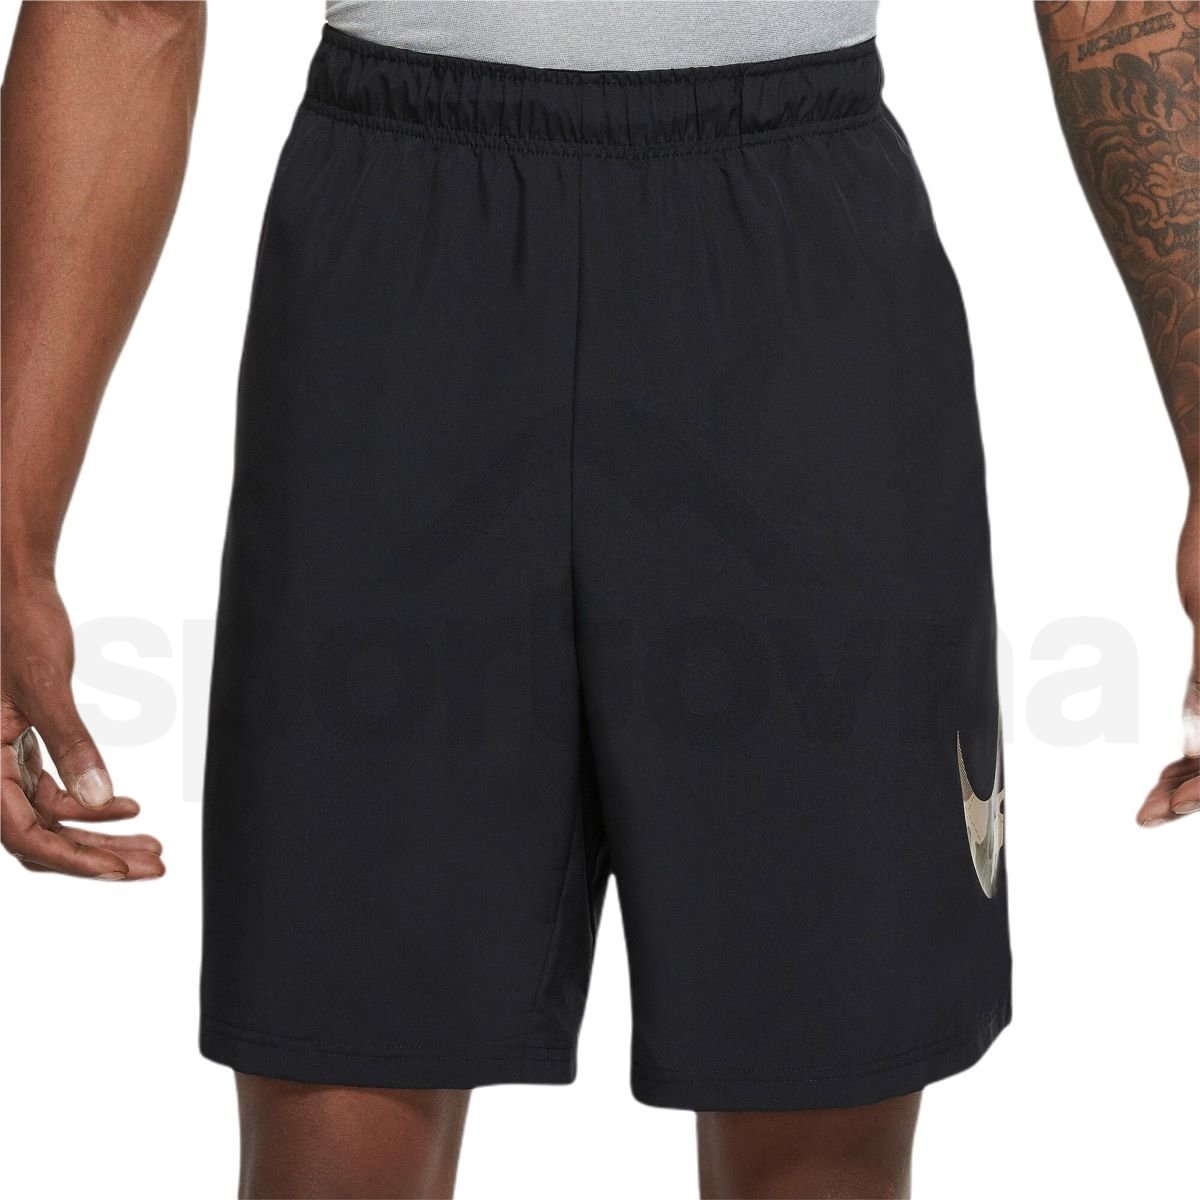 Šortky Nike Flex Woven Camo M - černá